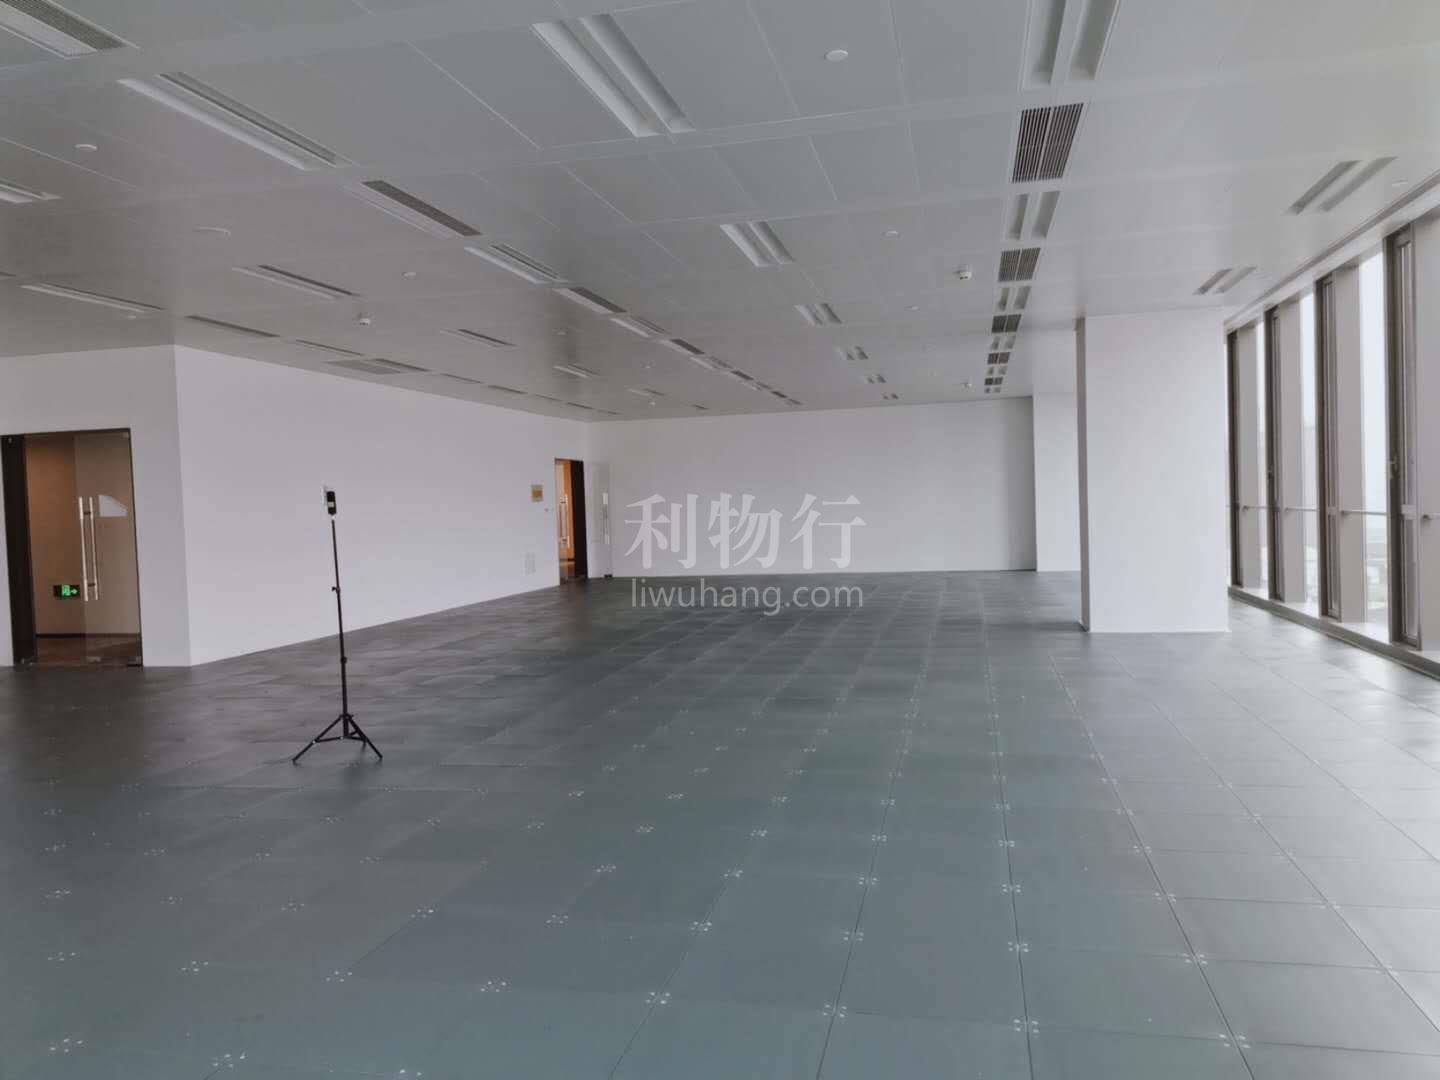 上海环贸广场写字楼445m2办公室9.50元/m2/天 中等装修